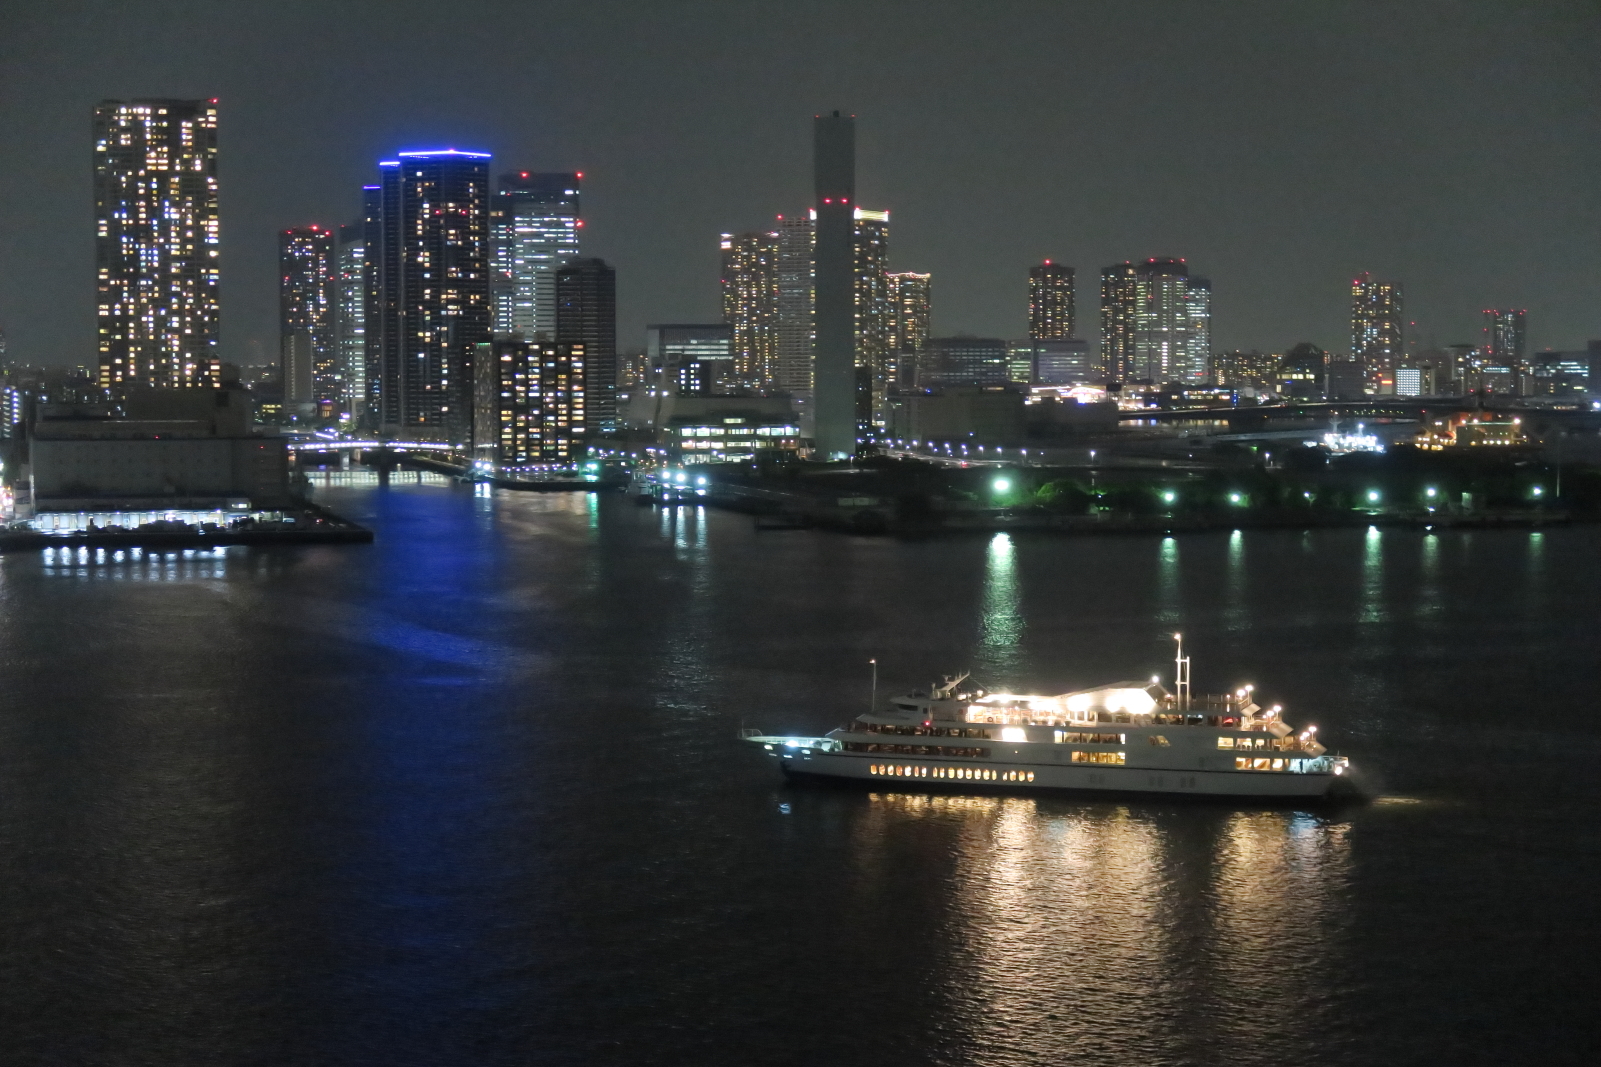 東京湾で新年の幕開けを船上で迎える「カウトンダウンクルーズ」
2022年12月31日(土)に運航！2種類のパーティープランをご用意